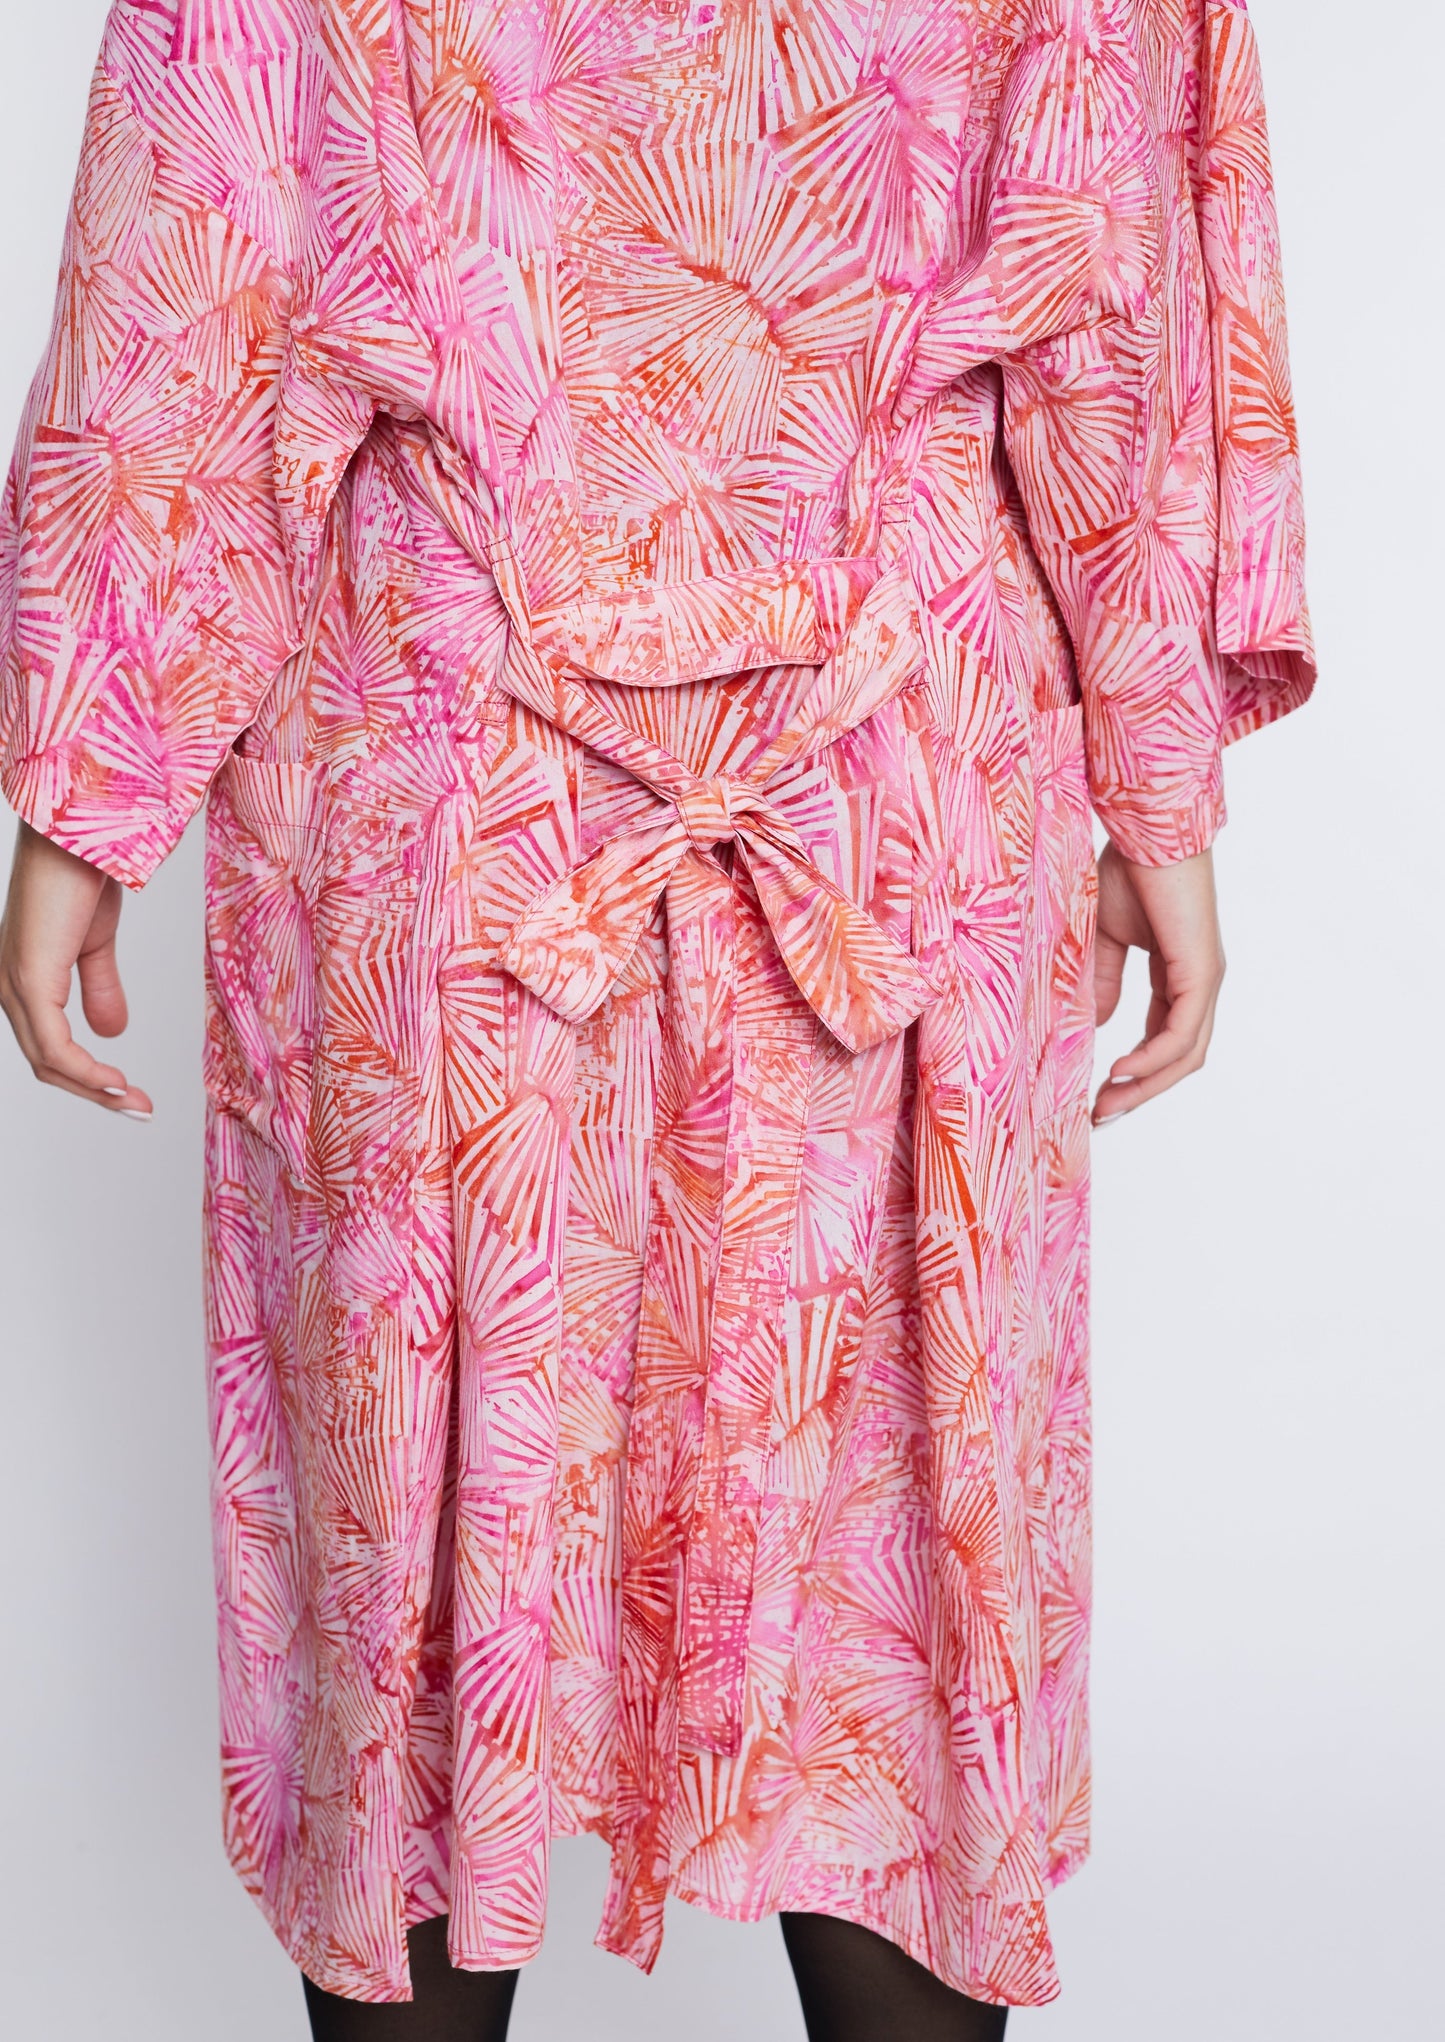 Langer Light-Pink handmade Kimono